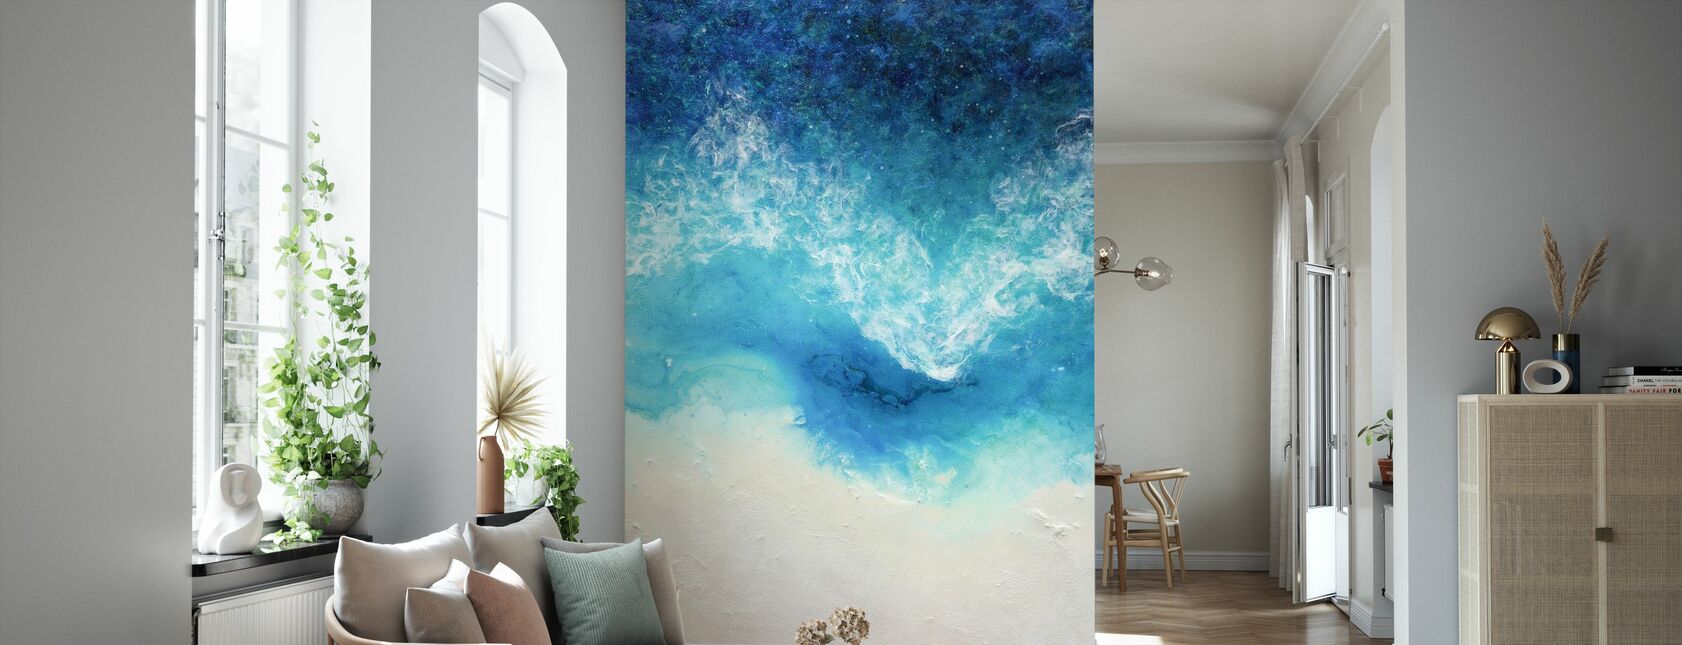 Astra - Wallpaper - Living Room